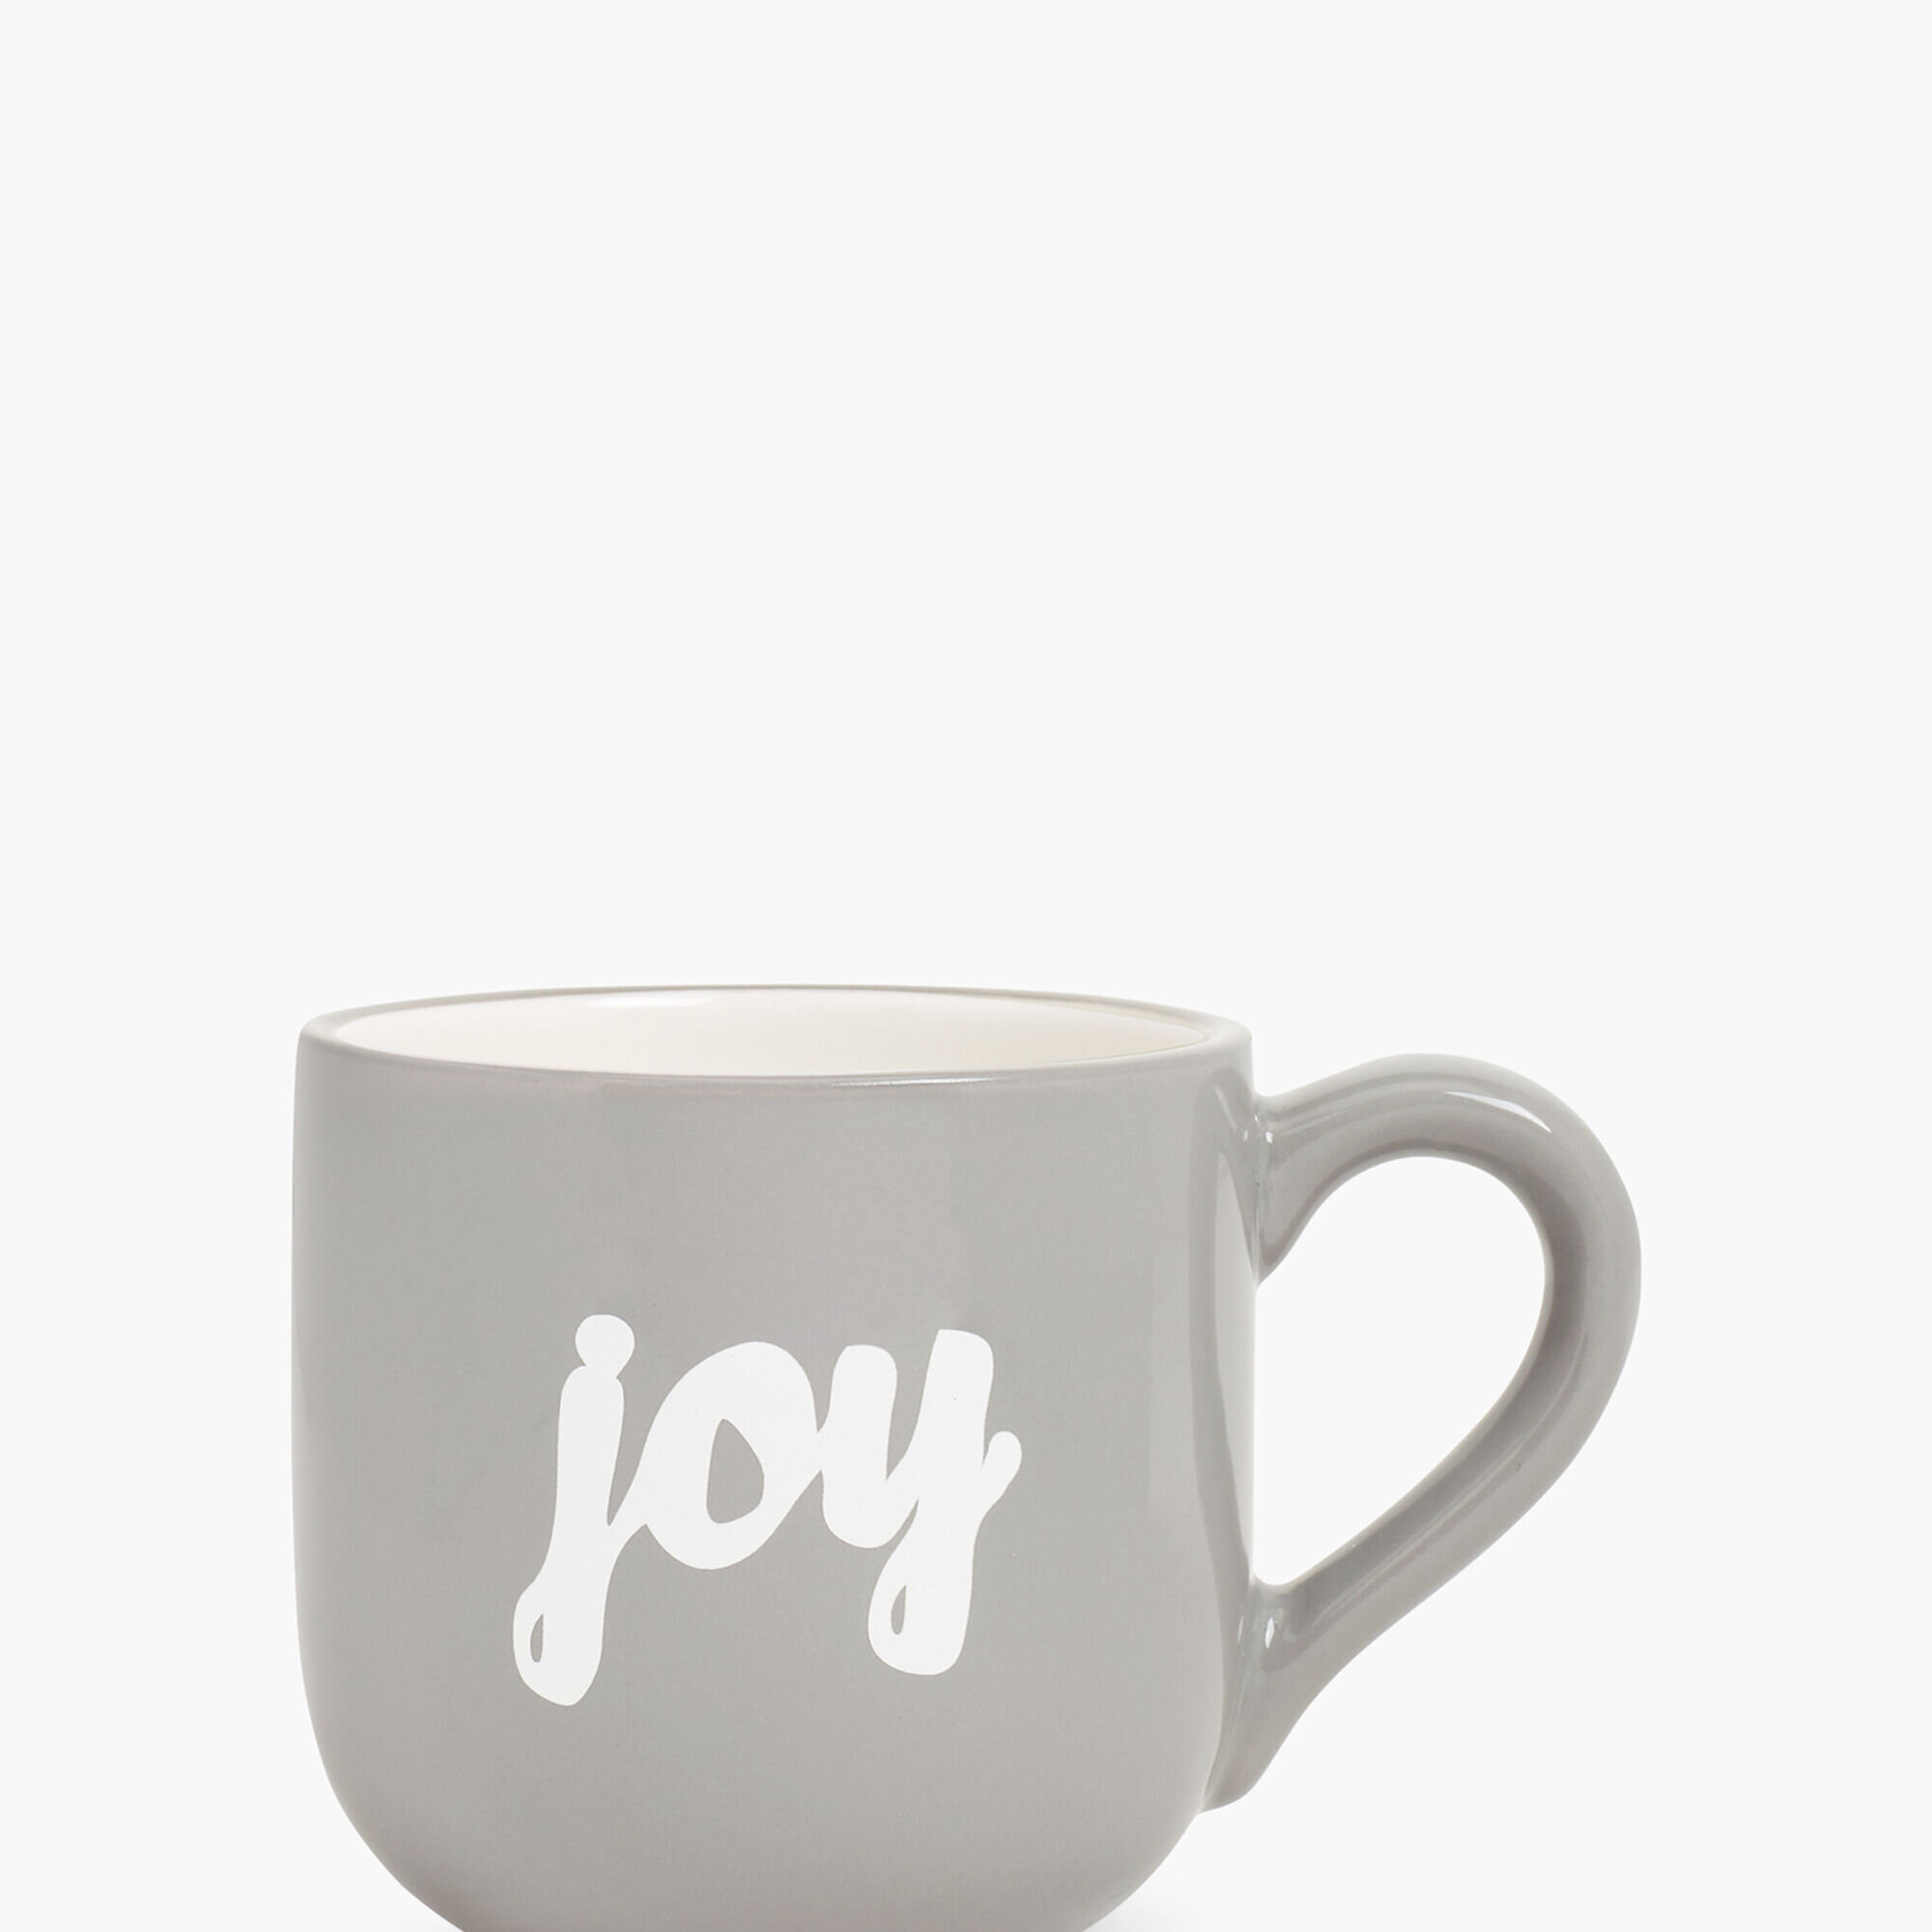 cup of joe.jpg